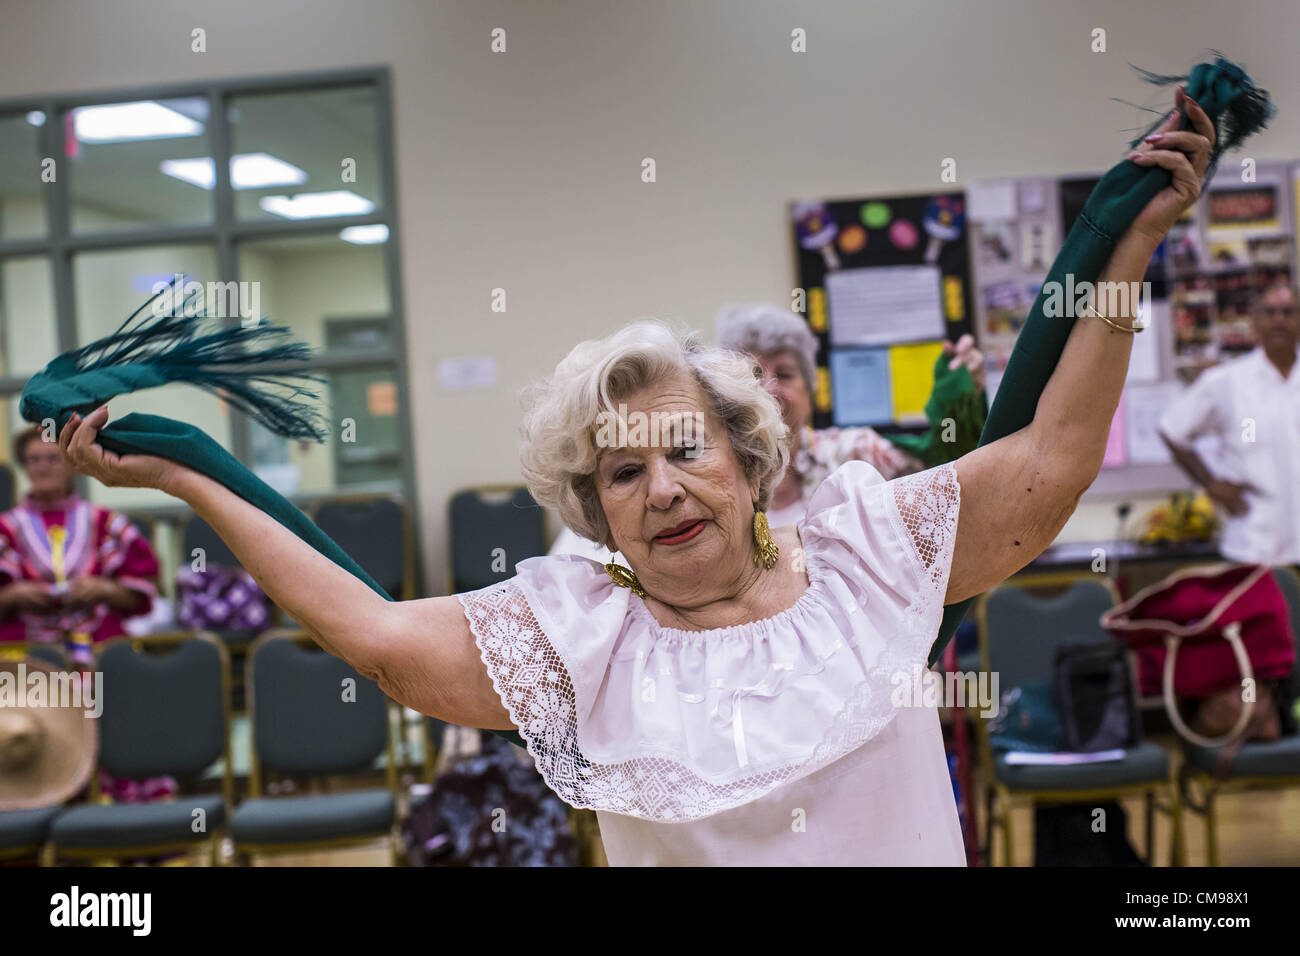 27. Juni 2012 - arbeitet Glendale, Arizona, USA - BLANCA FERNANDEZ, 80 Jahre alt, der Trainer und Choreograph für die Senior-FIesta-Tänzer mit Gruppe während der Proben Mittelpunkt Erwachsenen Glendale in Arizona, einem Vorort von Phoenix. Tanzen wie ein Teil des Trainingsprogramm nicht ungewöhnlich ist, aber die Senior Fiesta Tänzer mexikanischen Stil Folklorico Tänze für ihr Workout verwenden. Die Senior-Fiesta-Tänzer haben zusammen seit 15 Jahren durchgeführt. Sie erhalten jede Woche für Proben zusammen und führen in Pflegeheimen und Ruhestand Zentren in der Gegend von Phoenix, einmal im Monat oder so. Ihre energetische Mexic Stockfoto